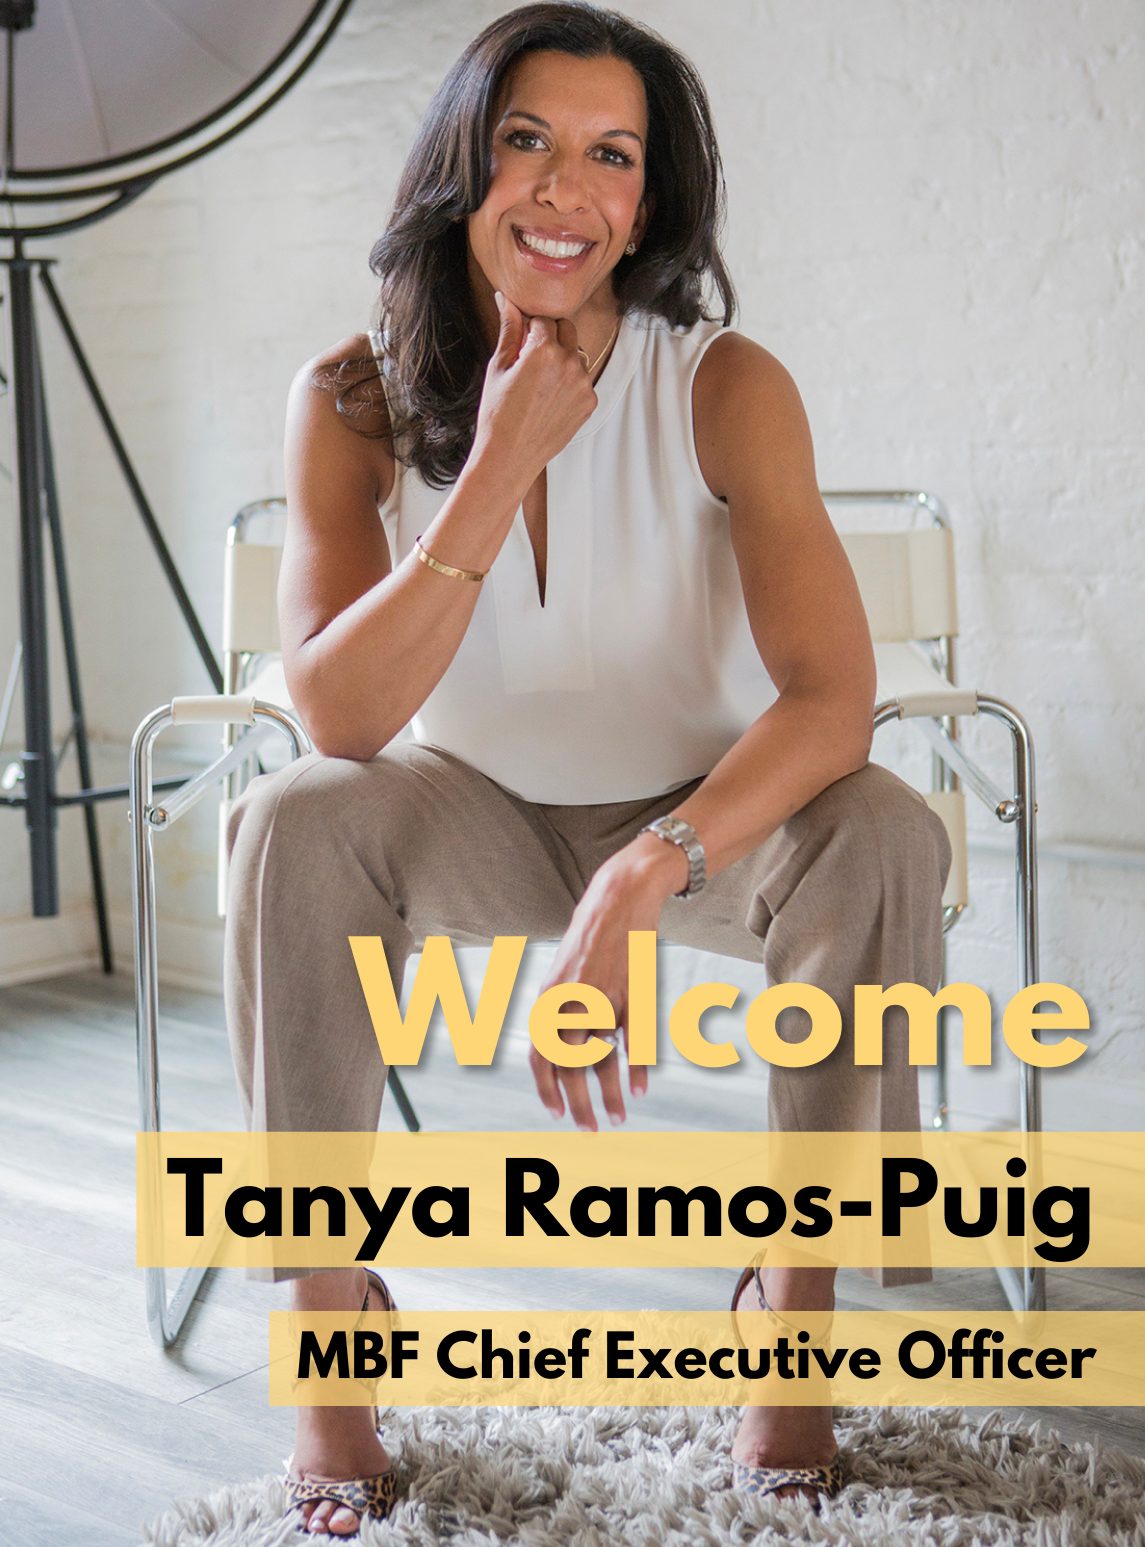 Tanya Ramos-Puig